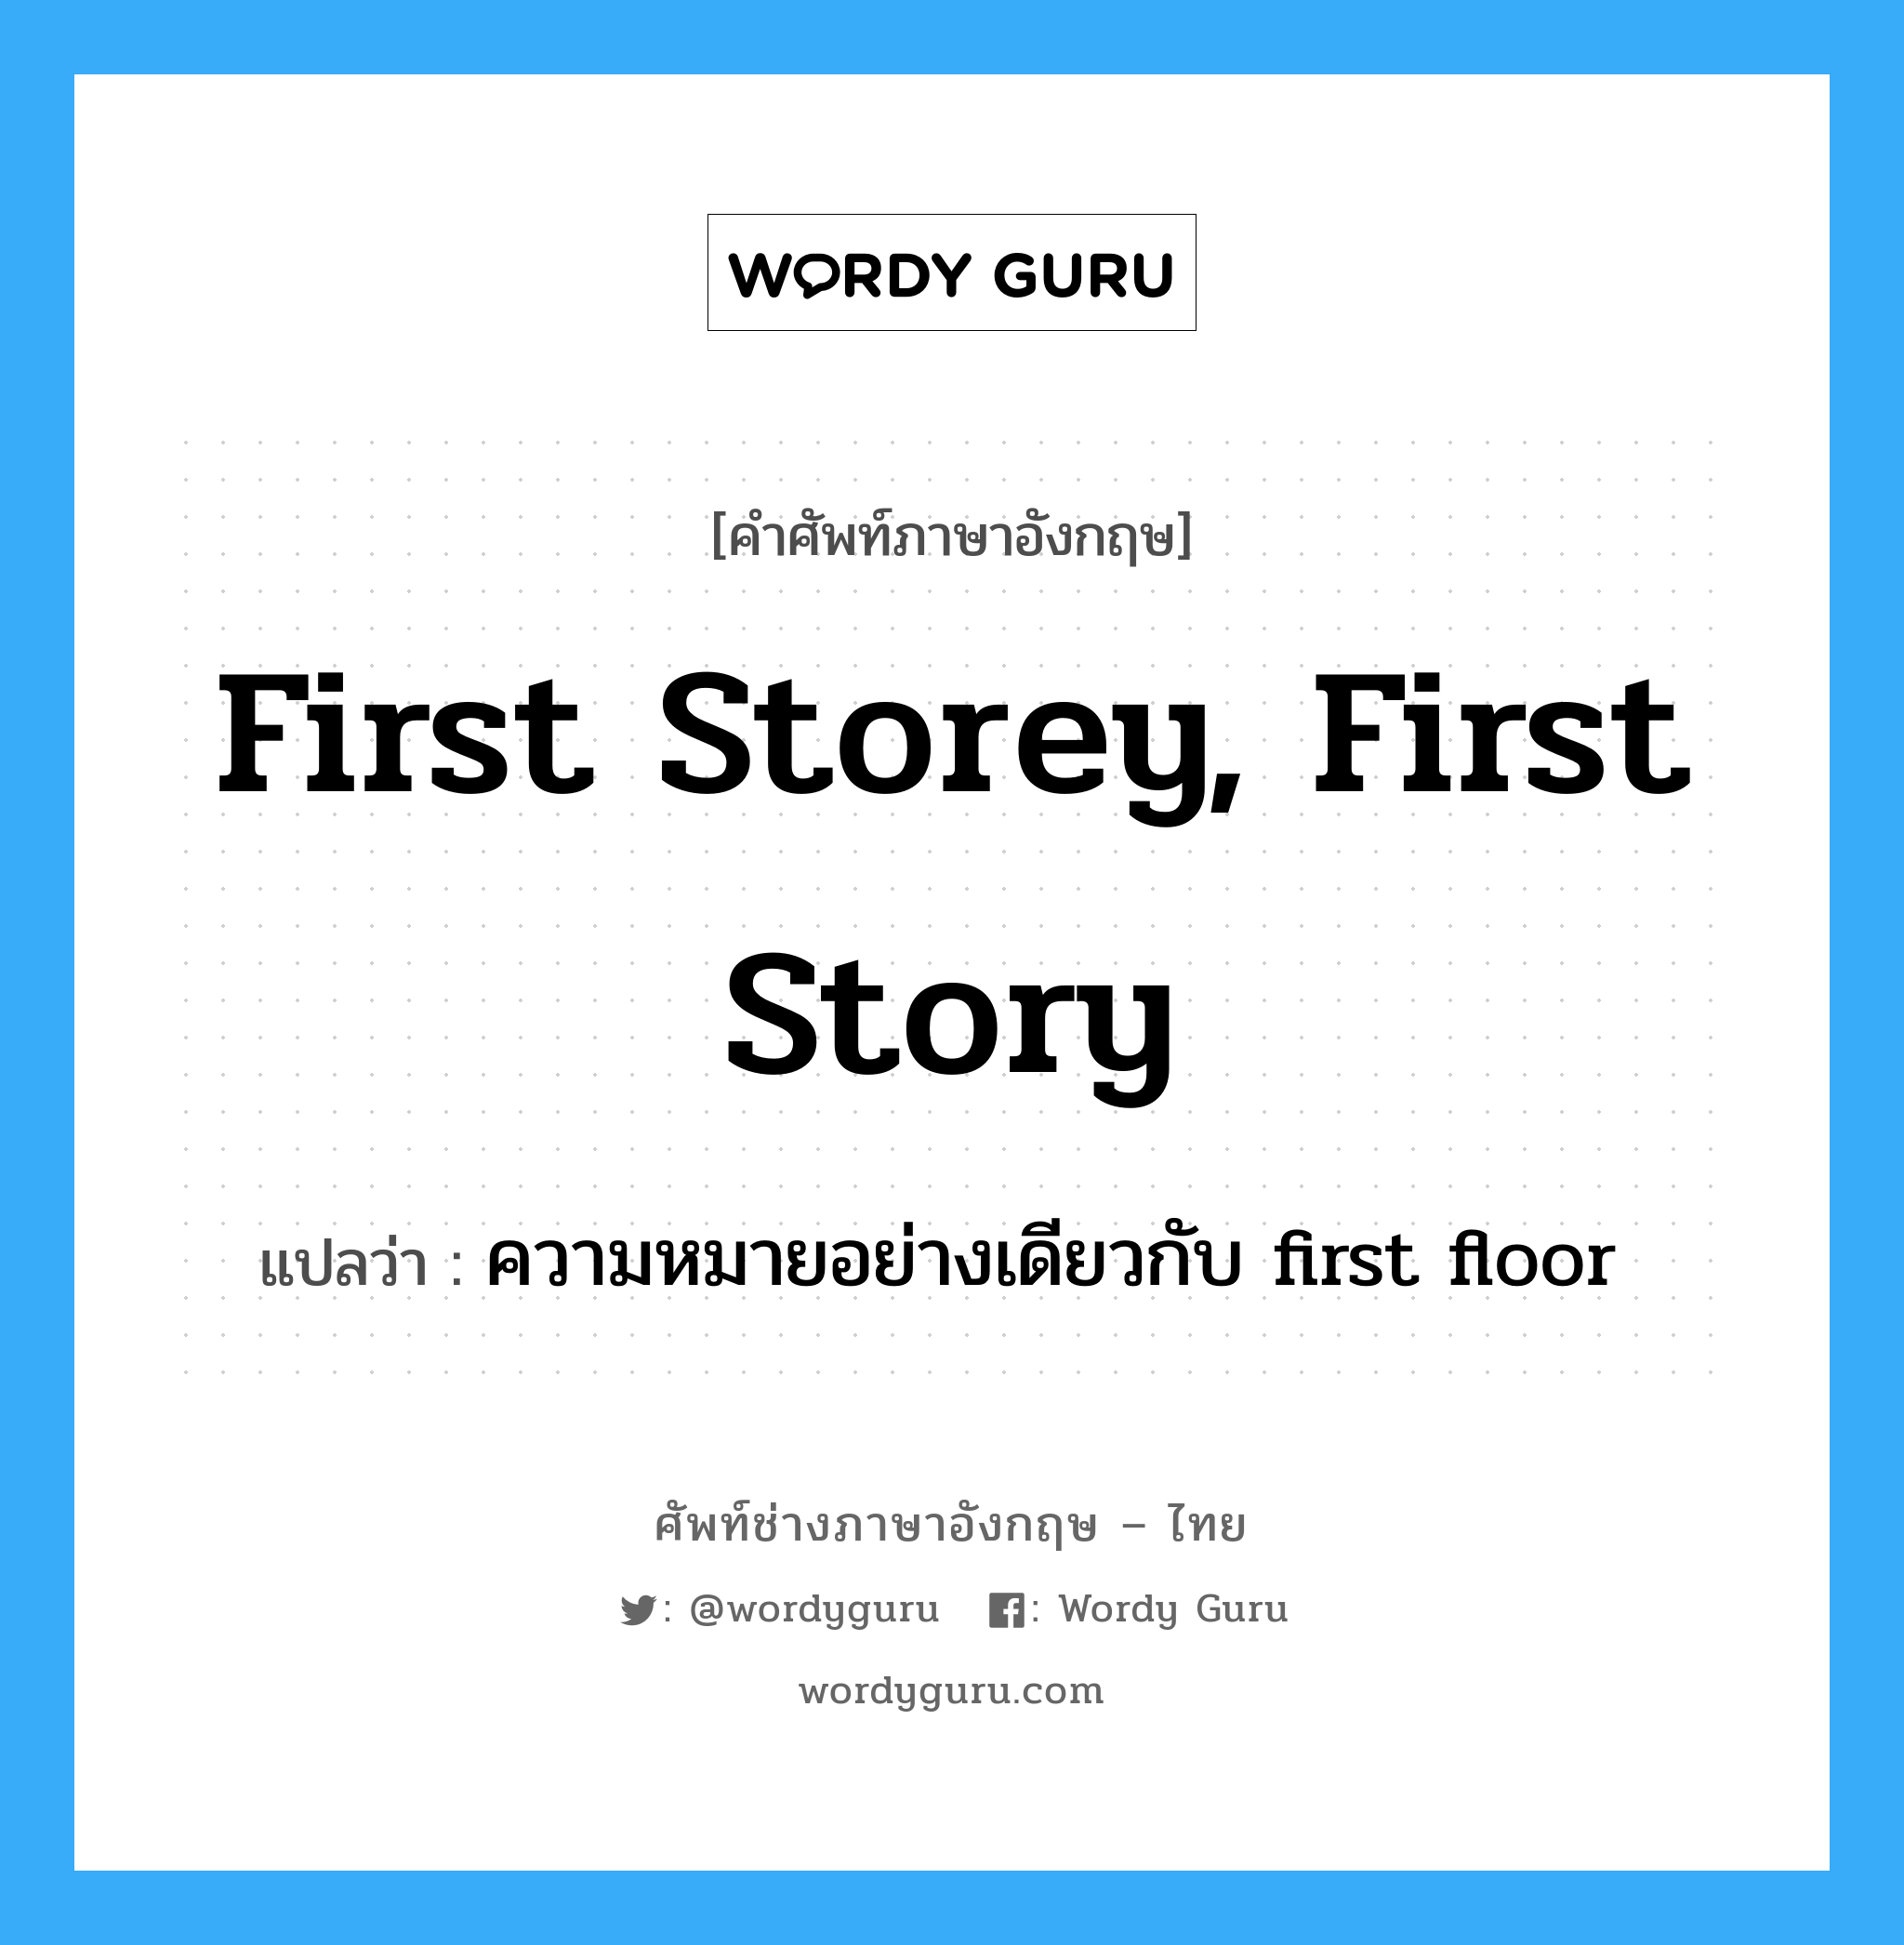 ความหมายอย่างเดียวกับ first floor ภาษาอังกฤษ?, คำศัพท์ช่างภาษาอังกฤษ - ไทย ความหมายอย่างเดียวกับ first floor คำศัพท์ภาษาอังกฤษ ความหมายอย่างเดียวกับ first floor แปลว่า first storey, first story